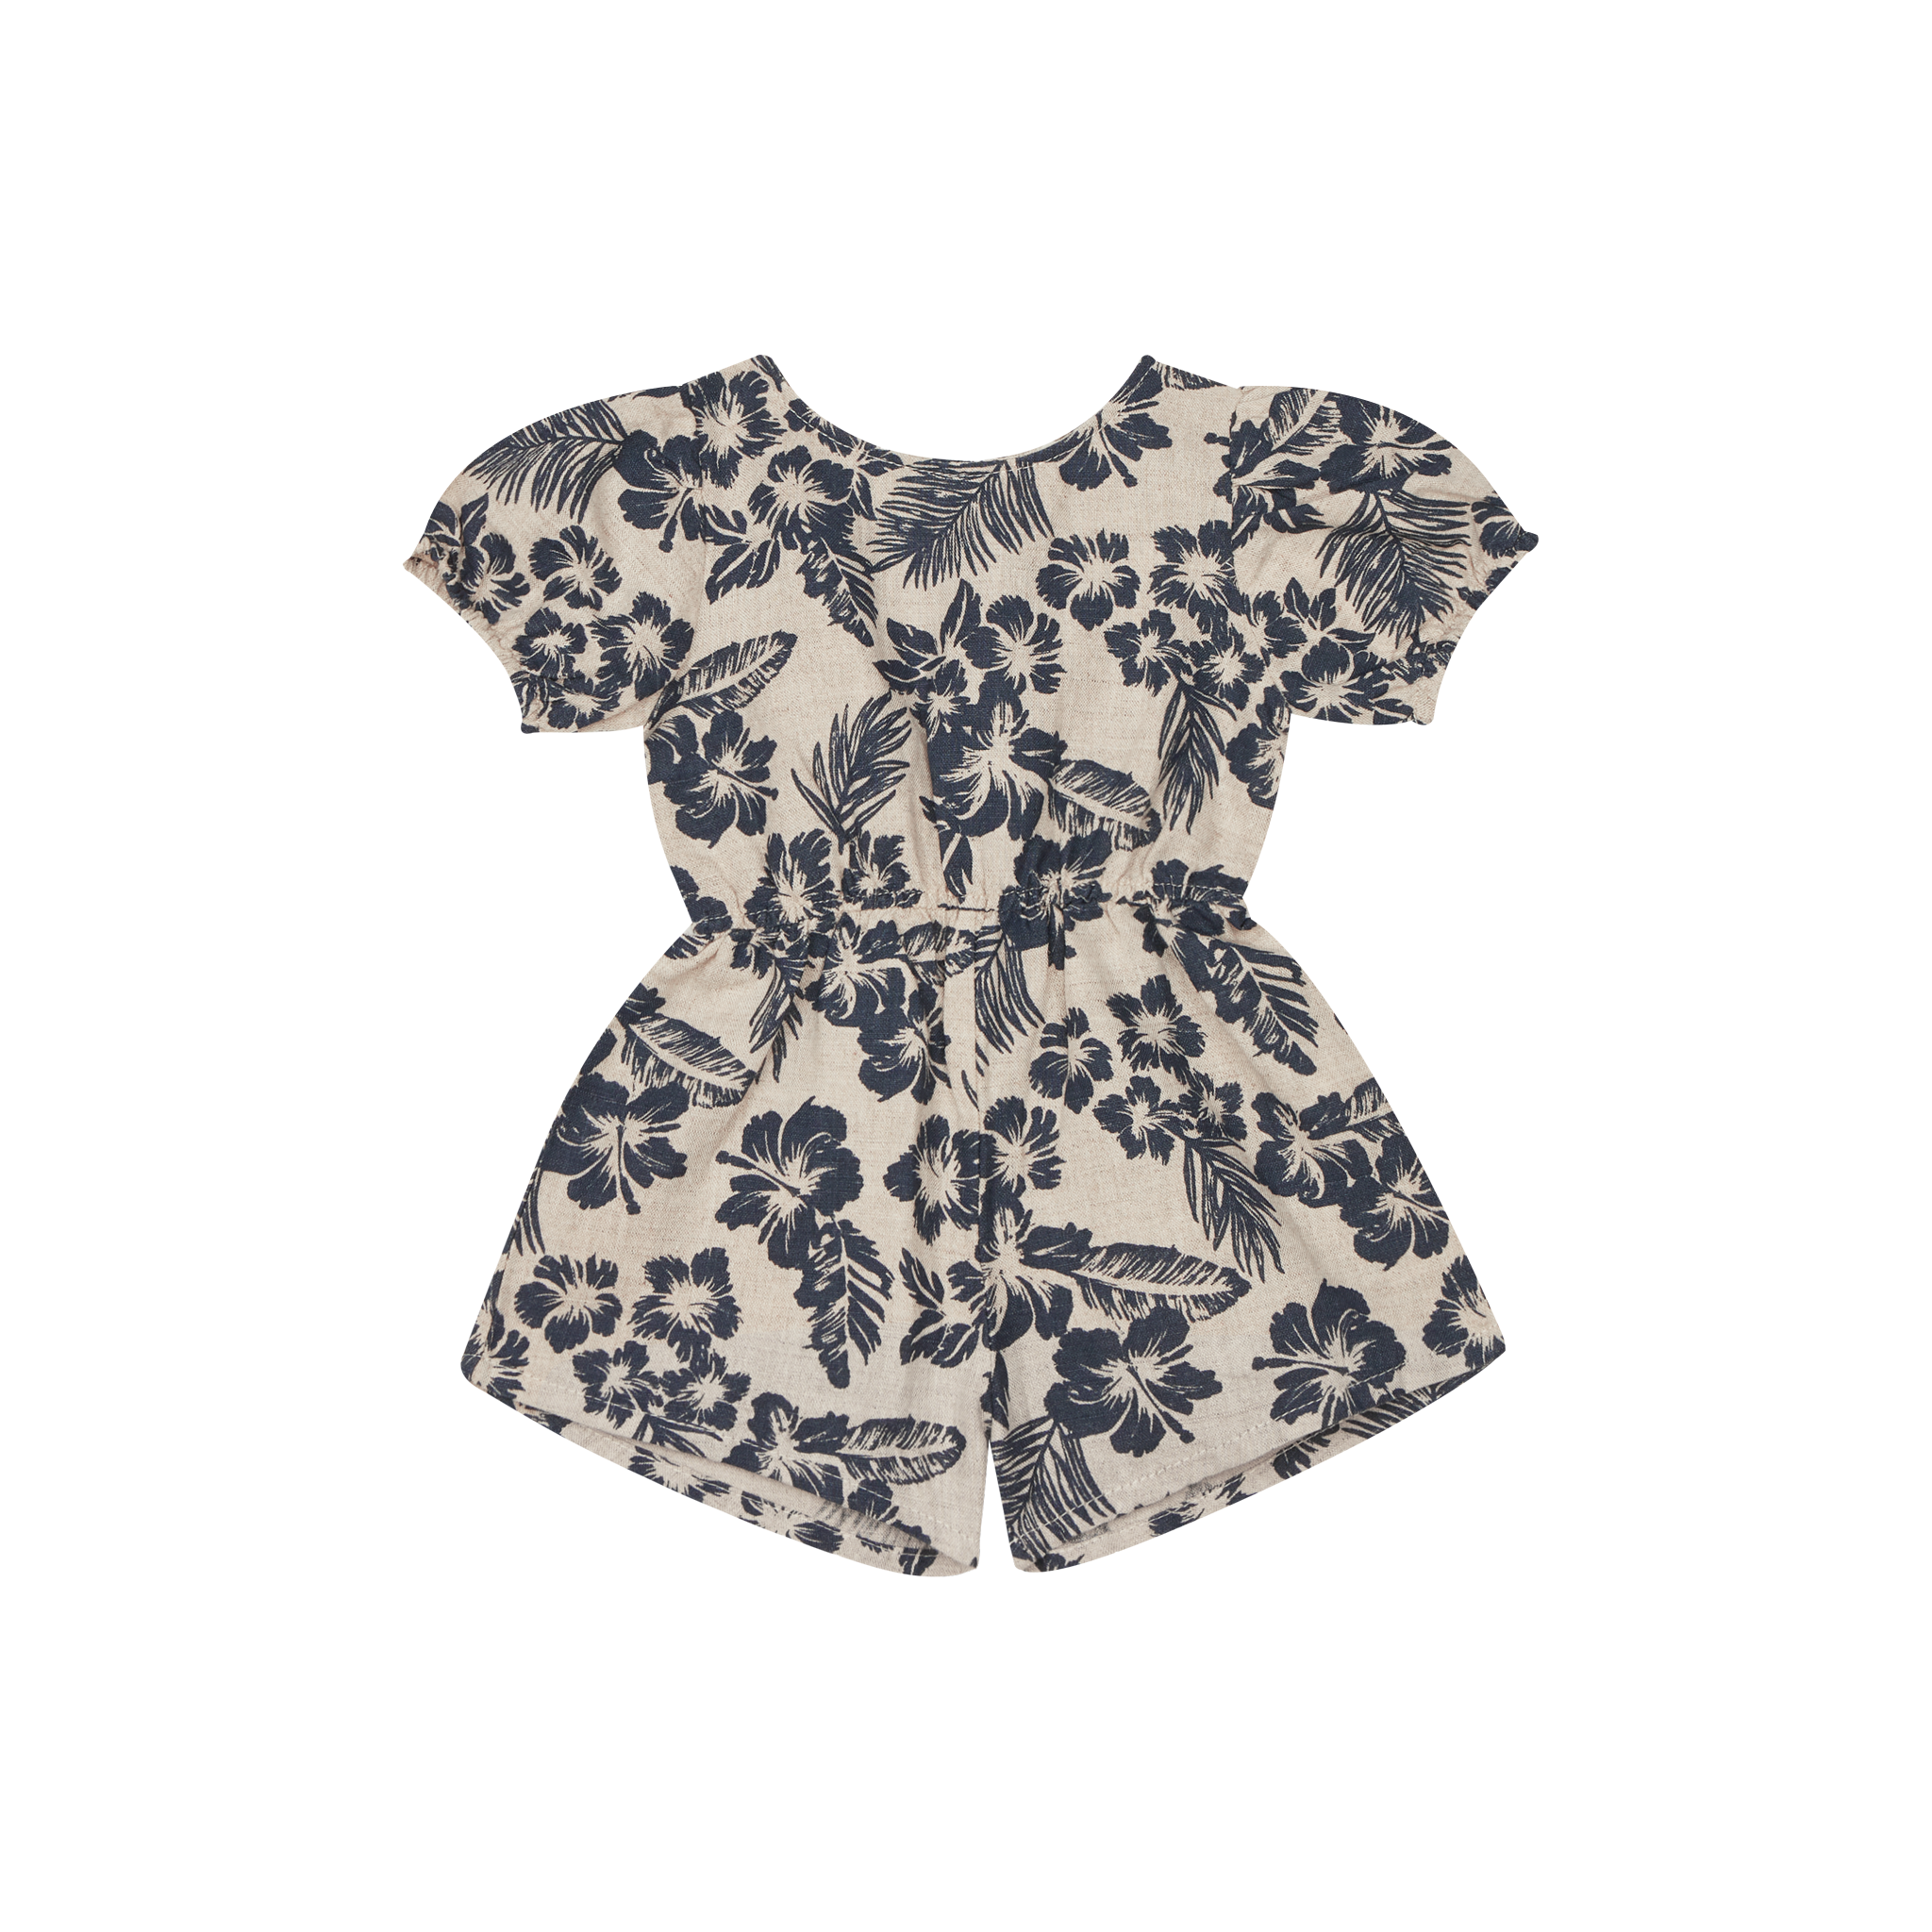 The New Society Hibiscus Baby Short Romper Navy / Sand Linen Cotton | BIEN BIEN bienbienshop.com